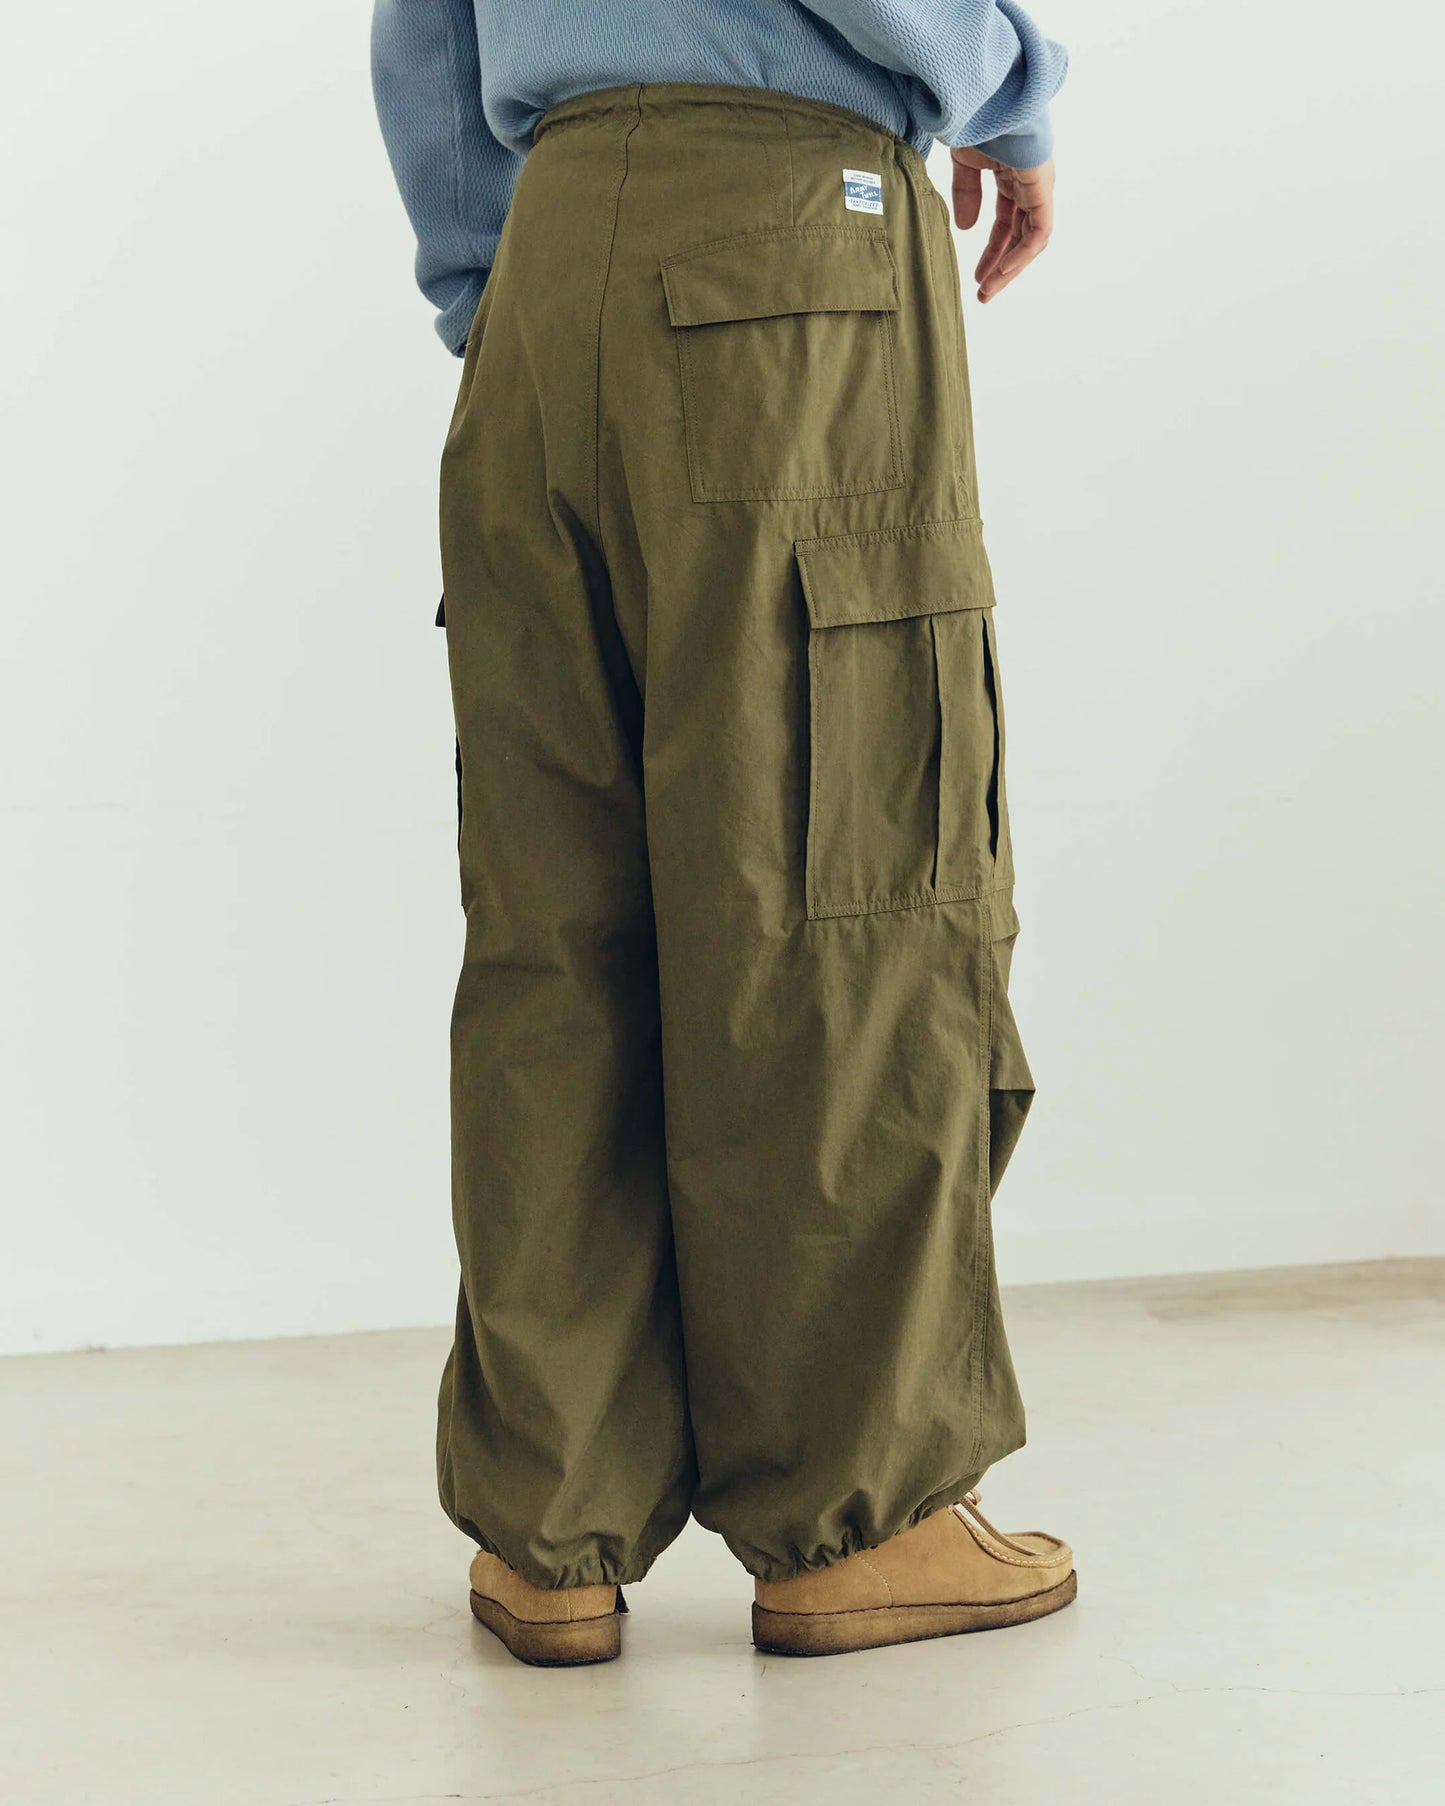 Army Twill - Cotton Nylon Cargo Pants - Khaki